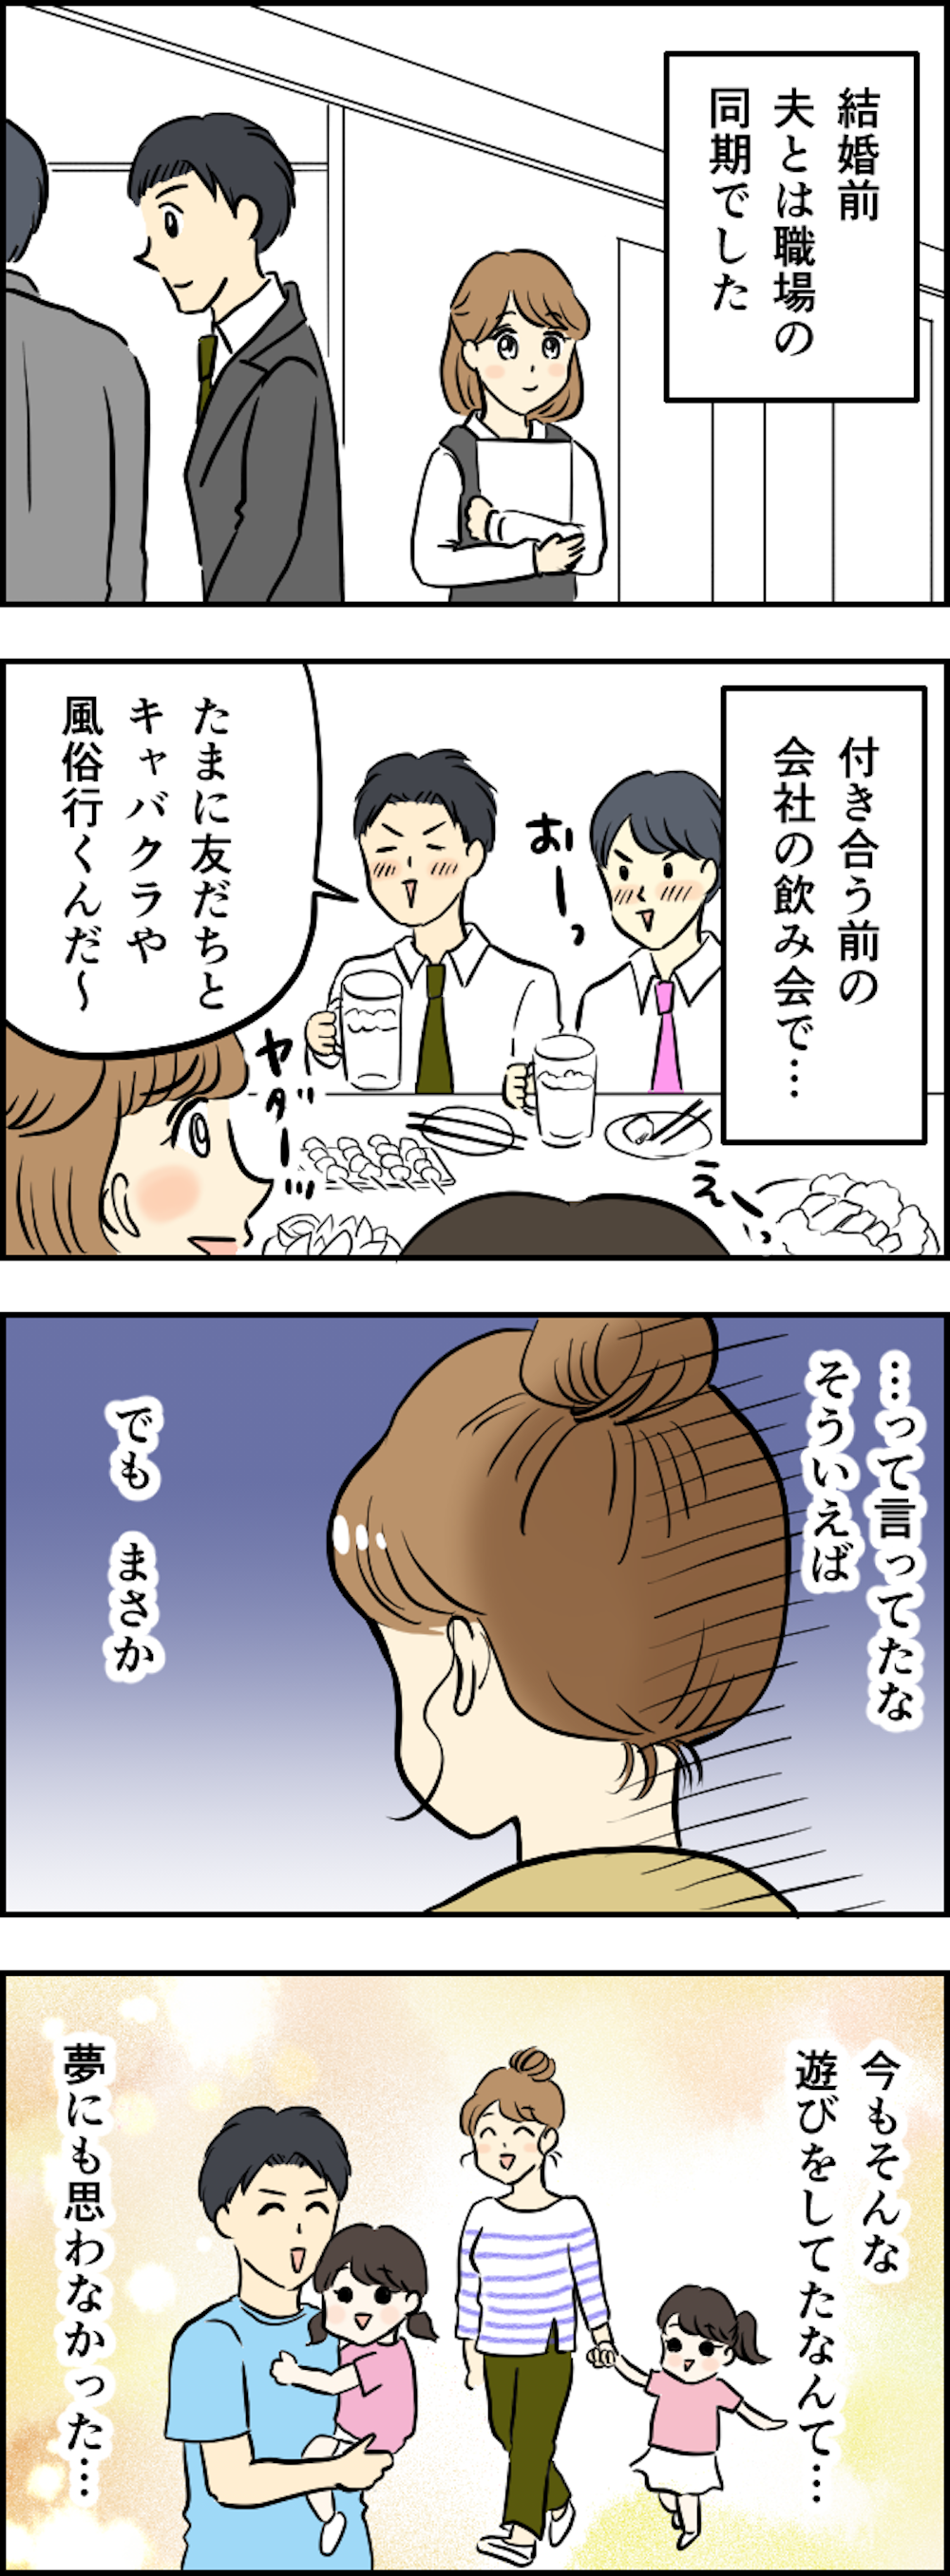 【漫画】私、裏切られていたの？ 娘たちが「夫の名刺入れ」から抜いて遊んでいたカードは...＜前編＞ kansei_004.png